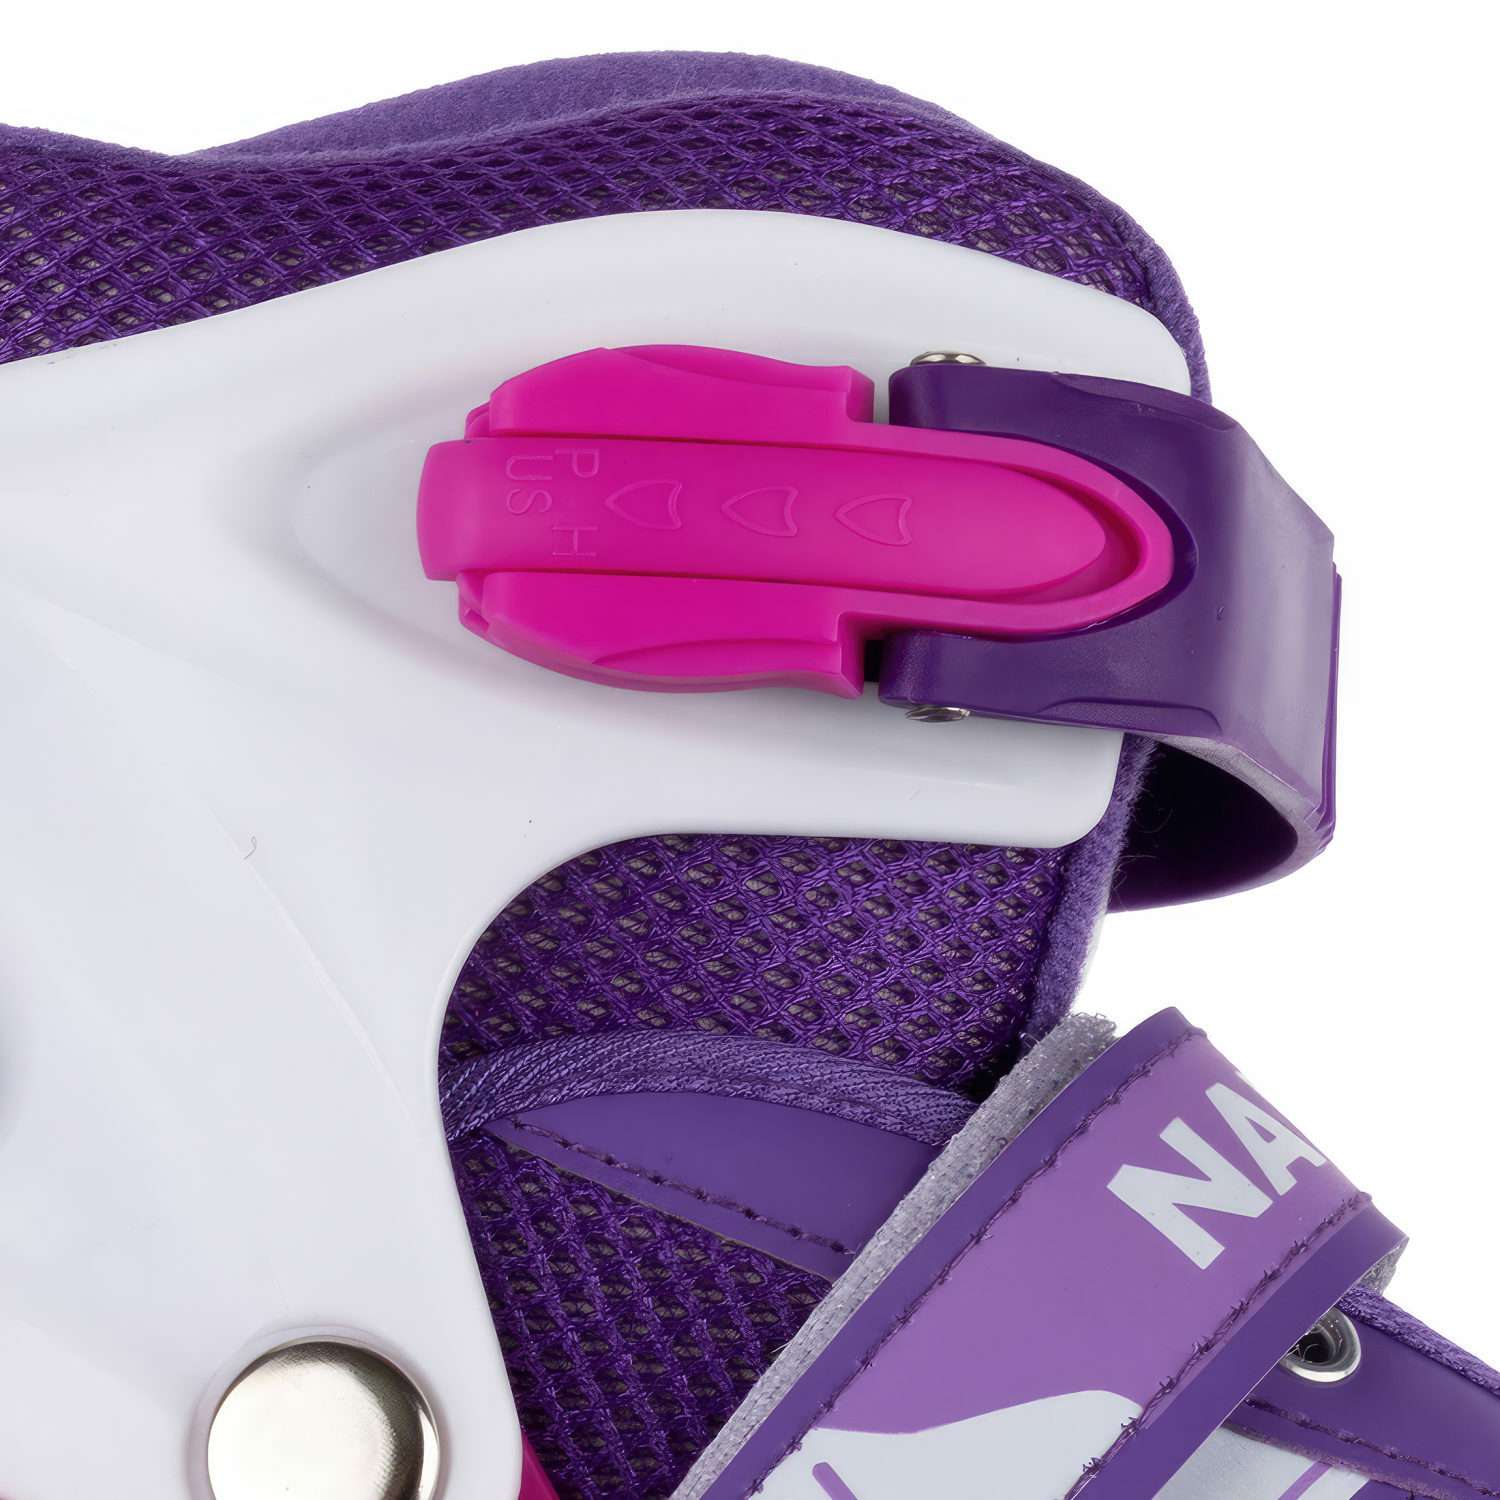 Ролики Navigator детские раздвижные 30 - 33 размер с защитой и шлемом розовый - фото 11